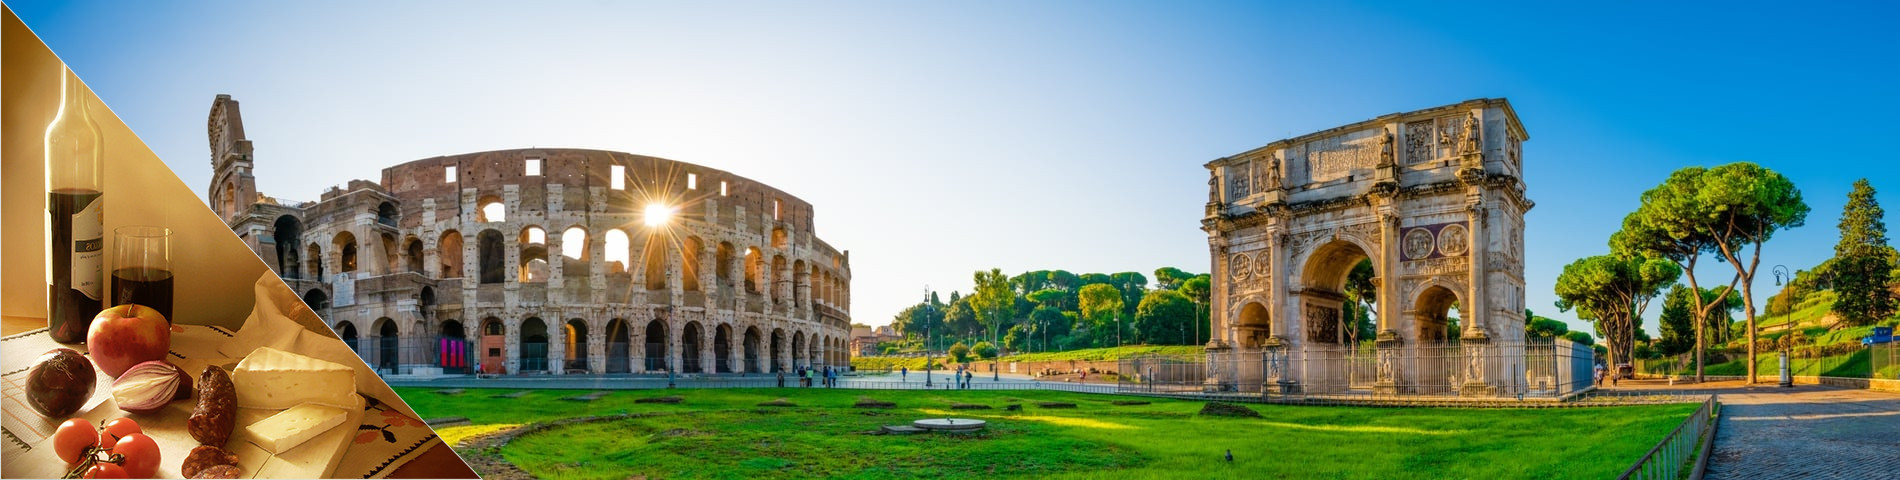 Rooma - Italia & kulttuuri